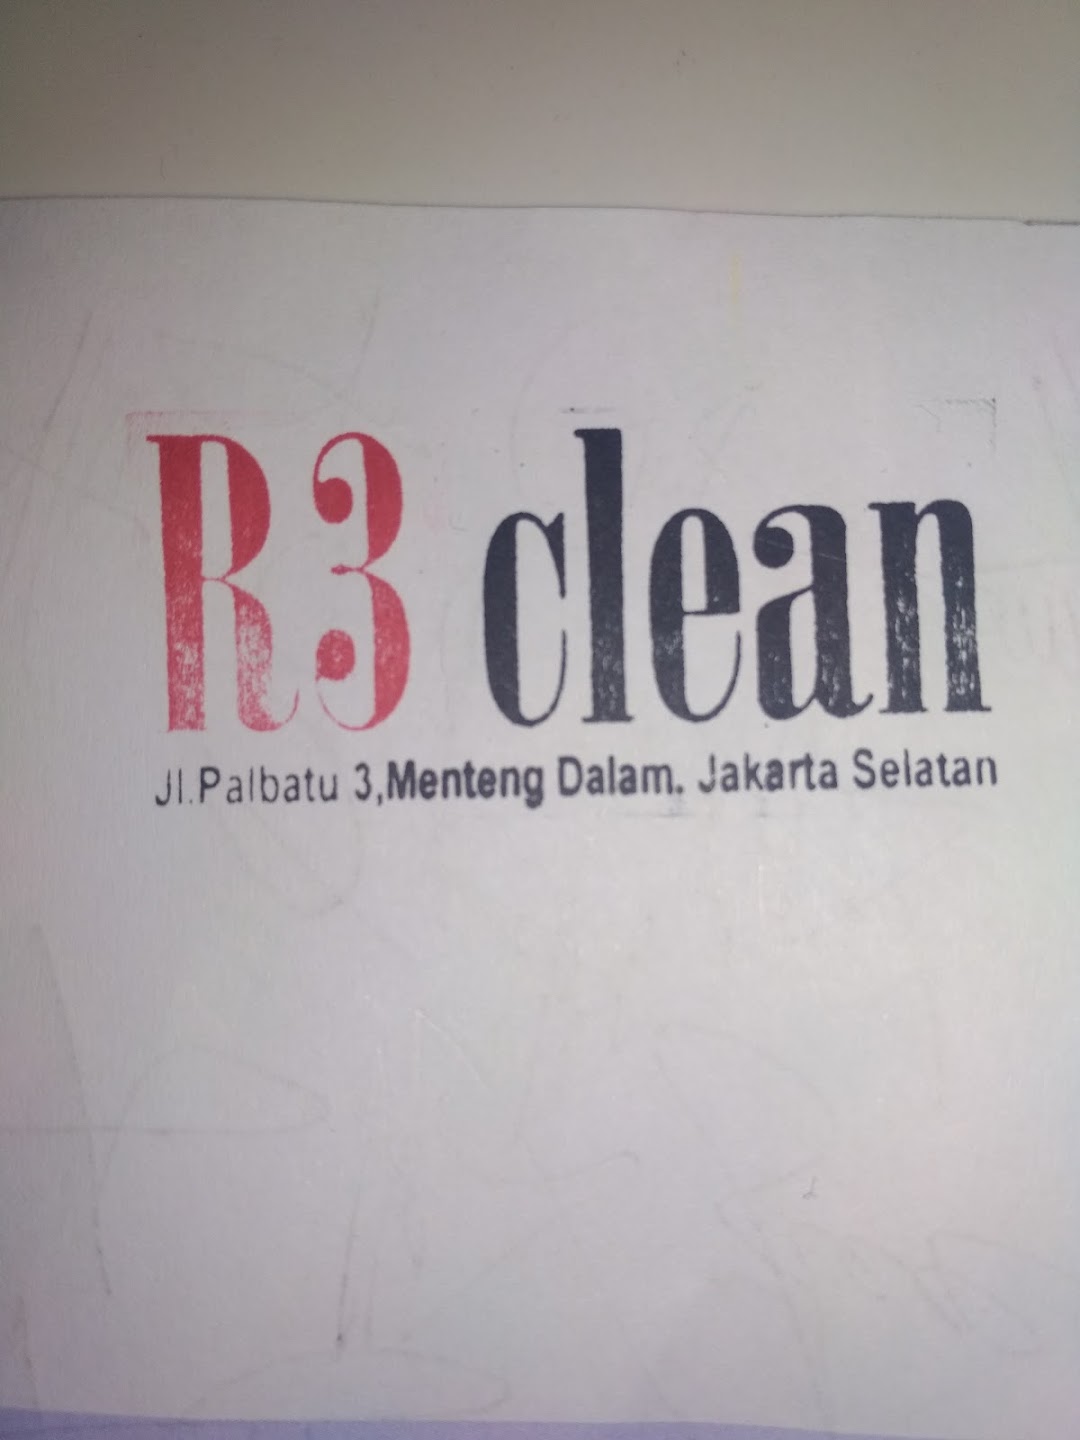 R3 clean (rizalclean)